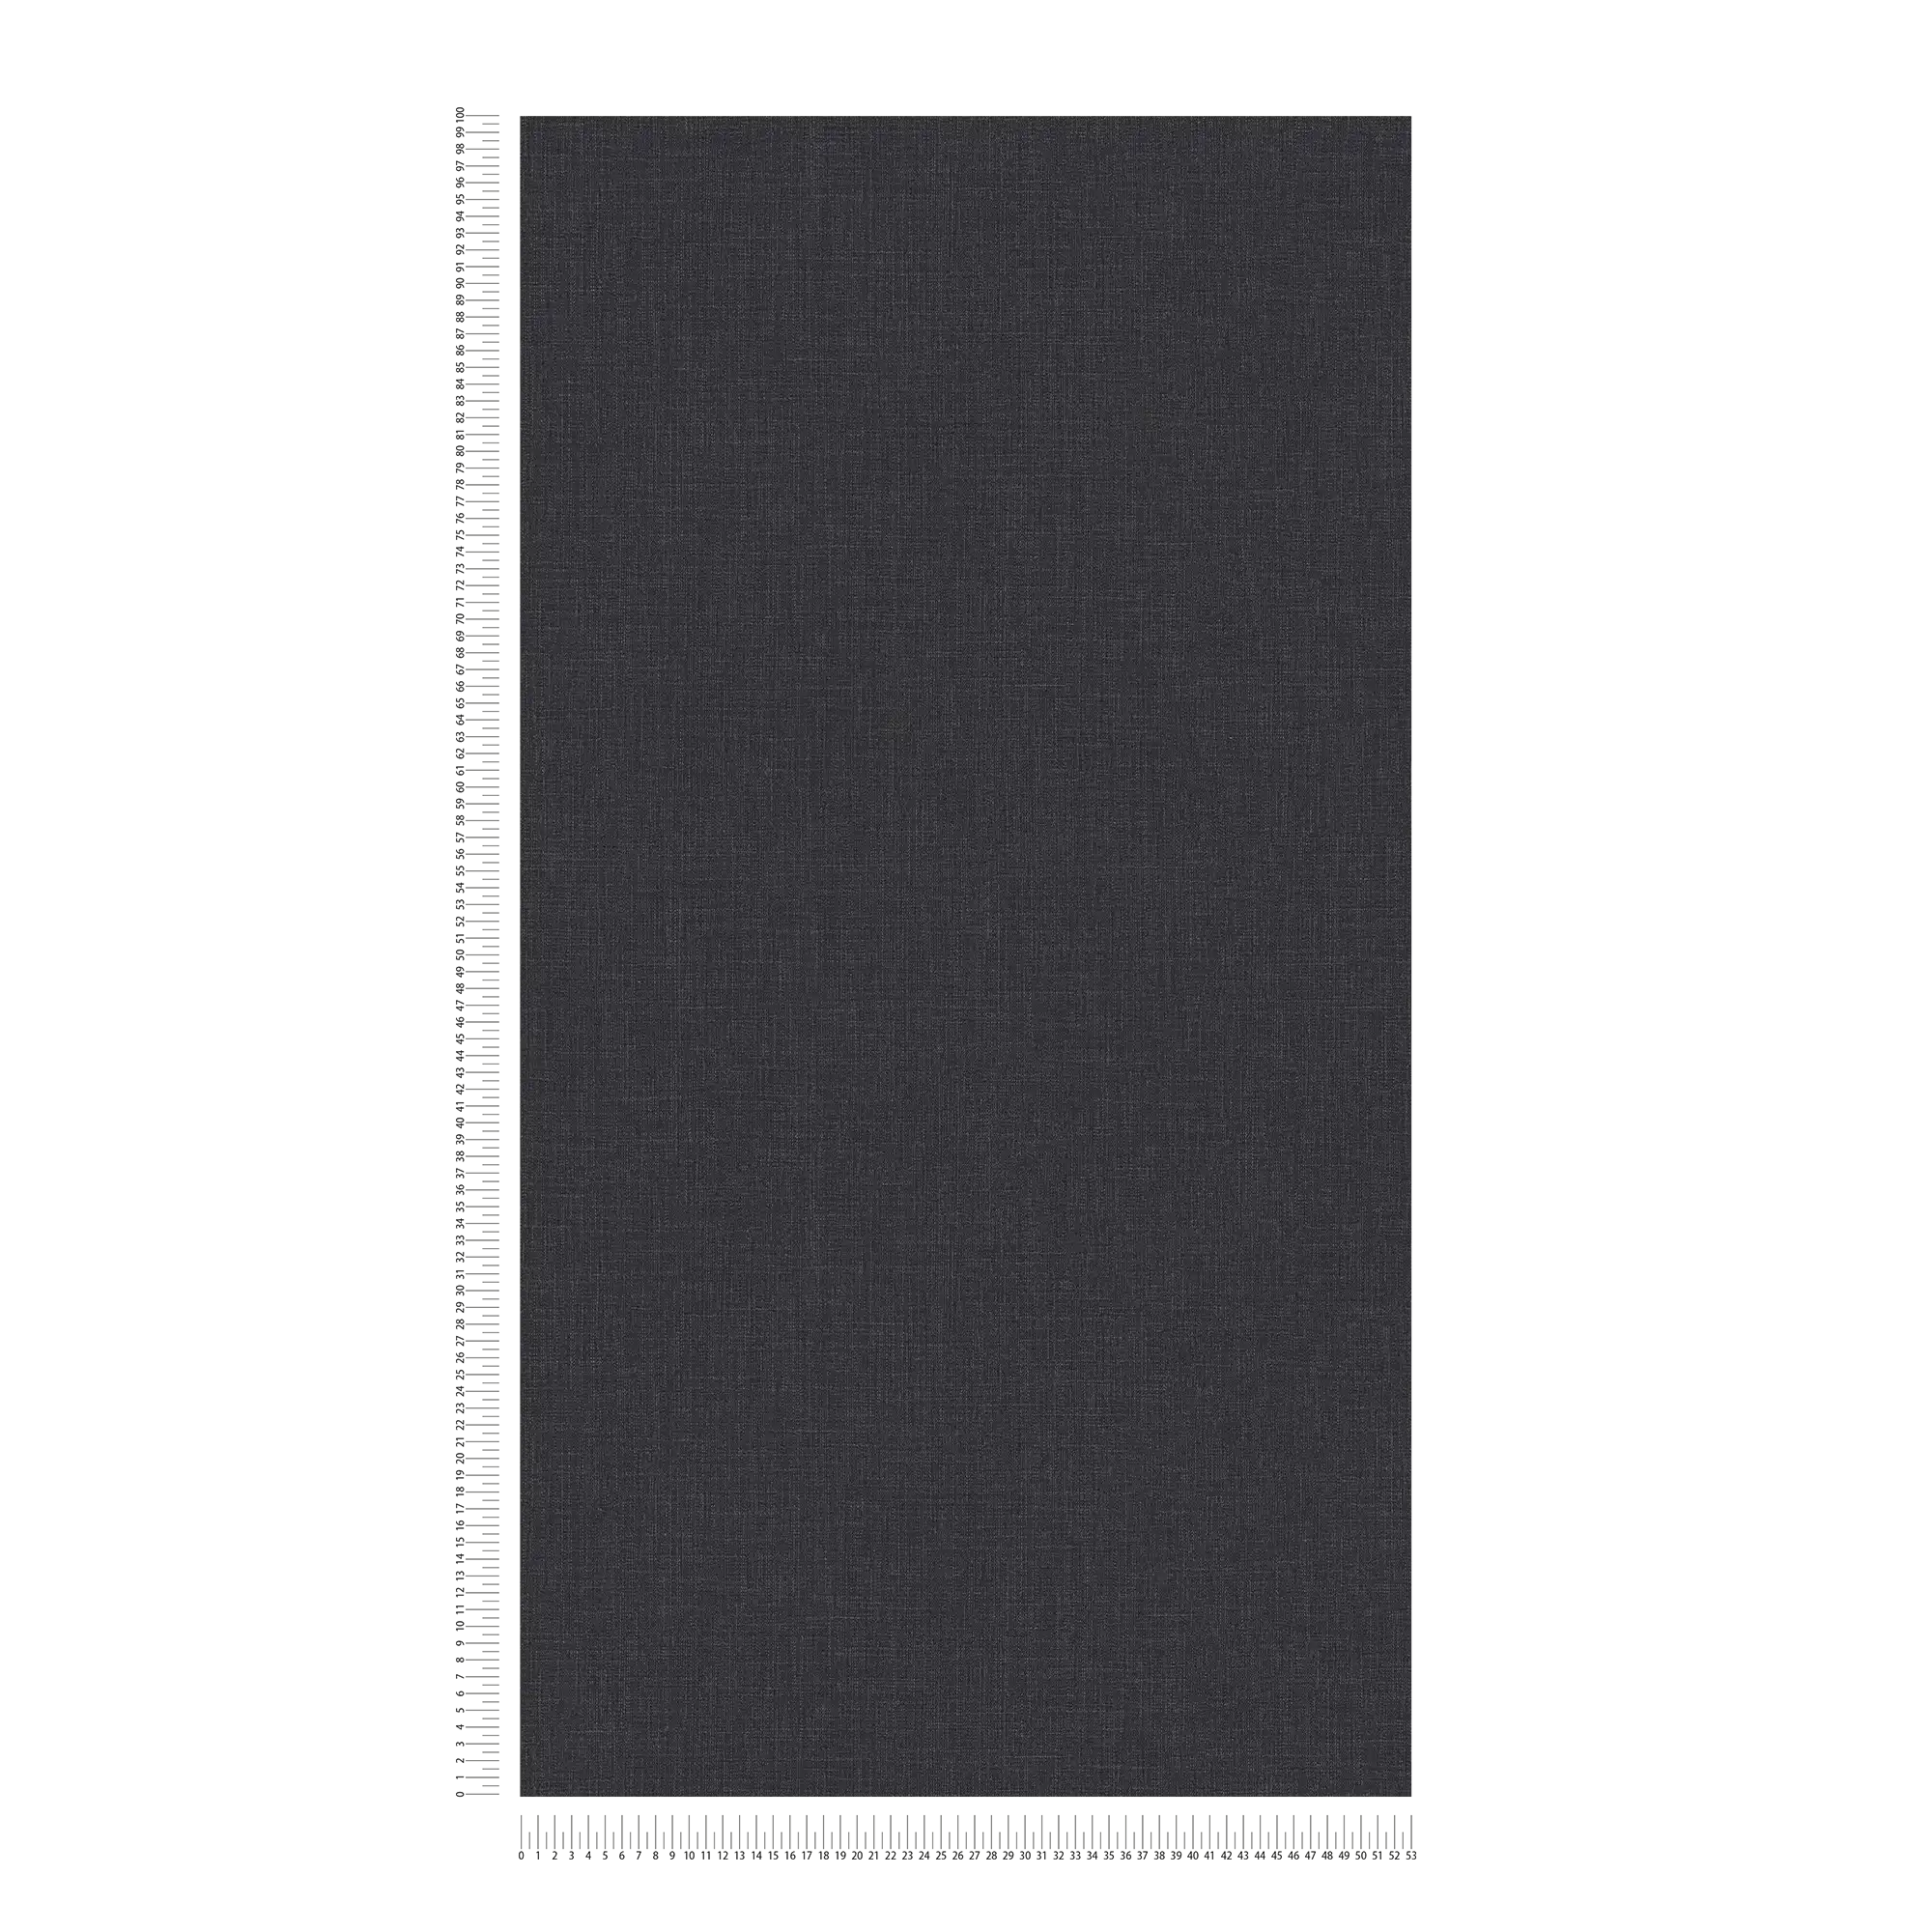             Carta da parati in tessuto non tessuto screziata con aspetto tessile - blu, grigio, bianco
        